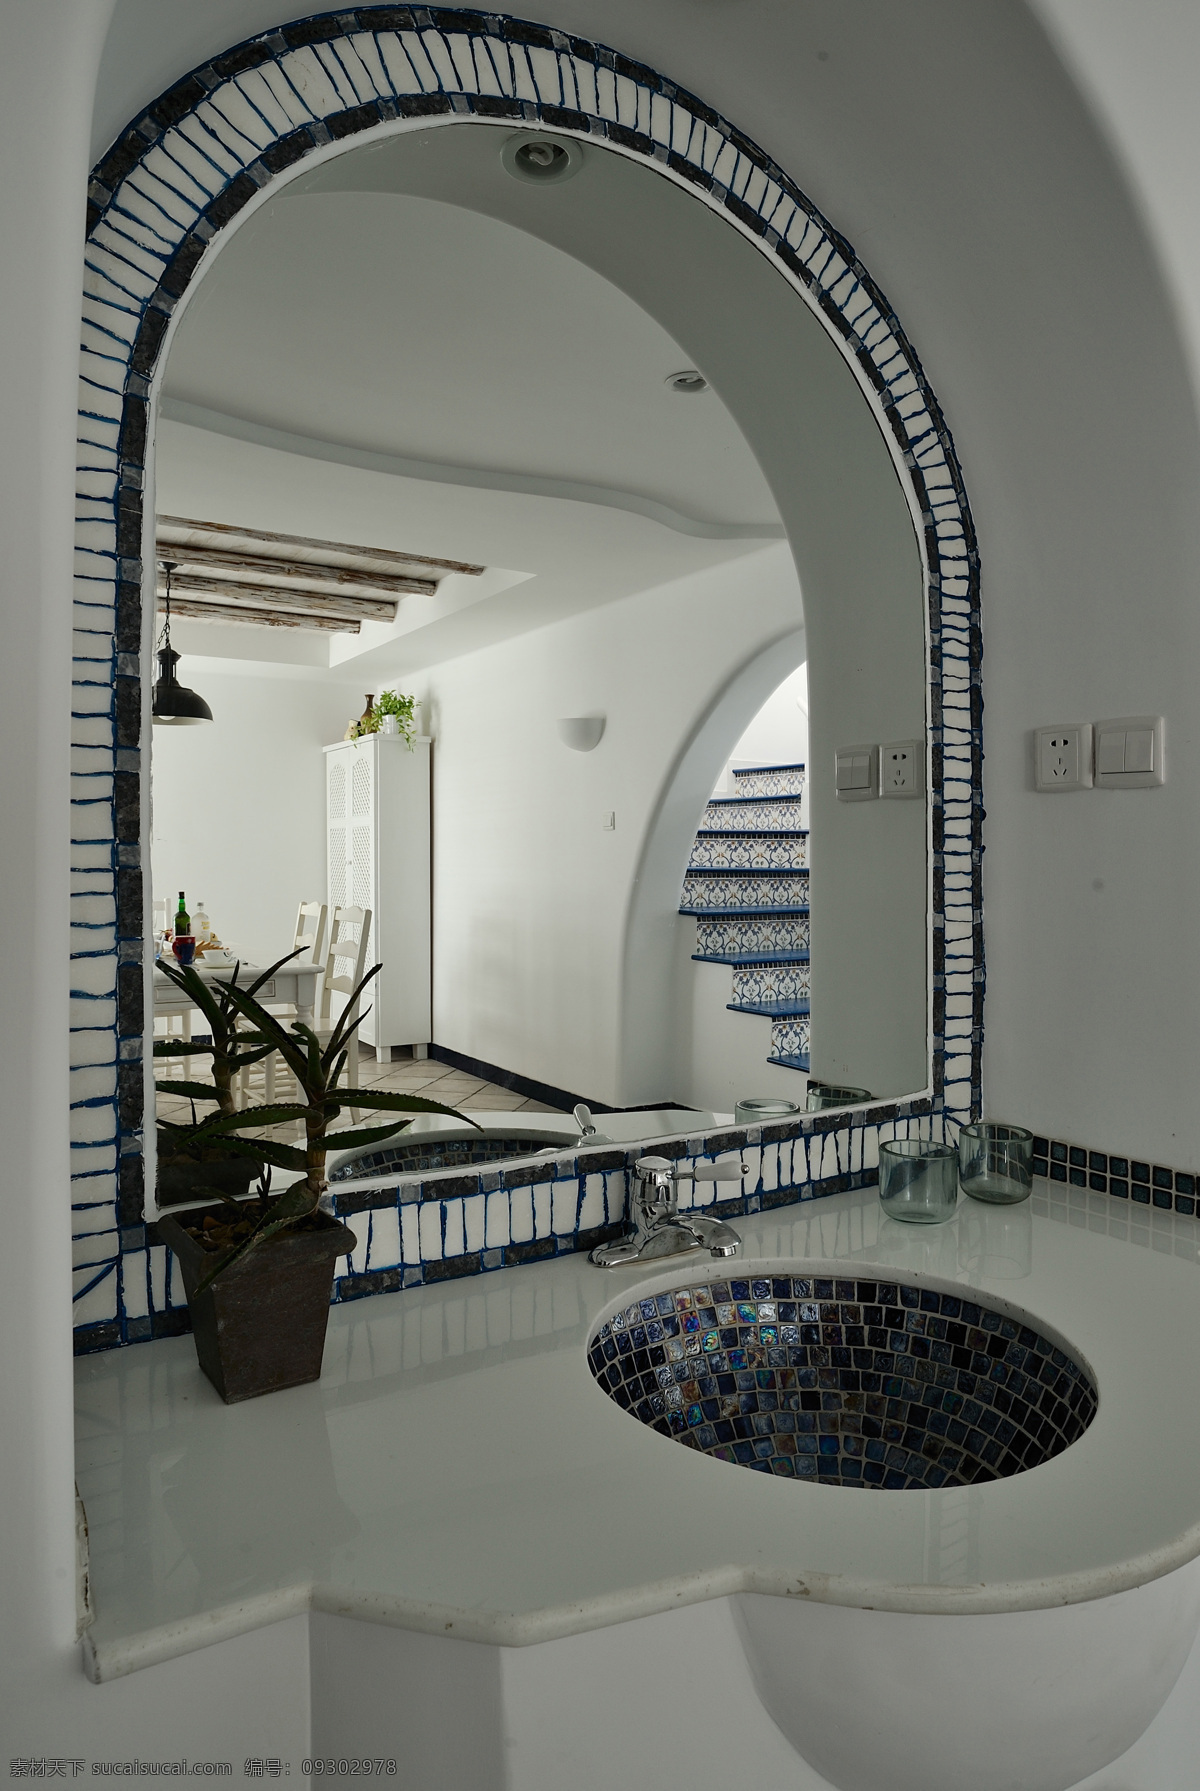 奢华 洗手间 效果图 3d贴图 奢华洗手间 高清 渲染 图 3d 装饰素材 室内设计